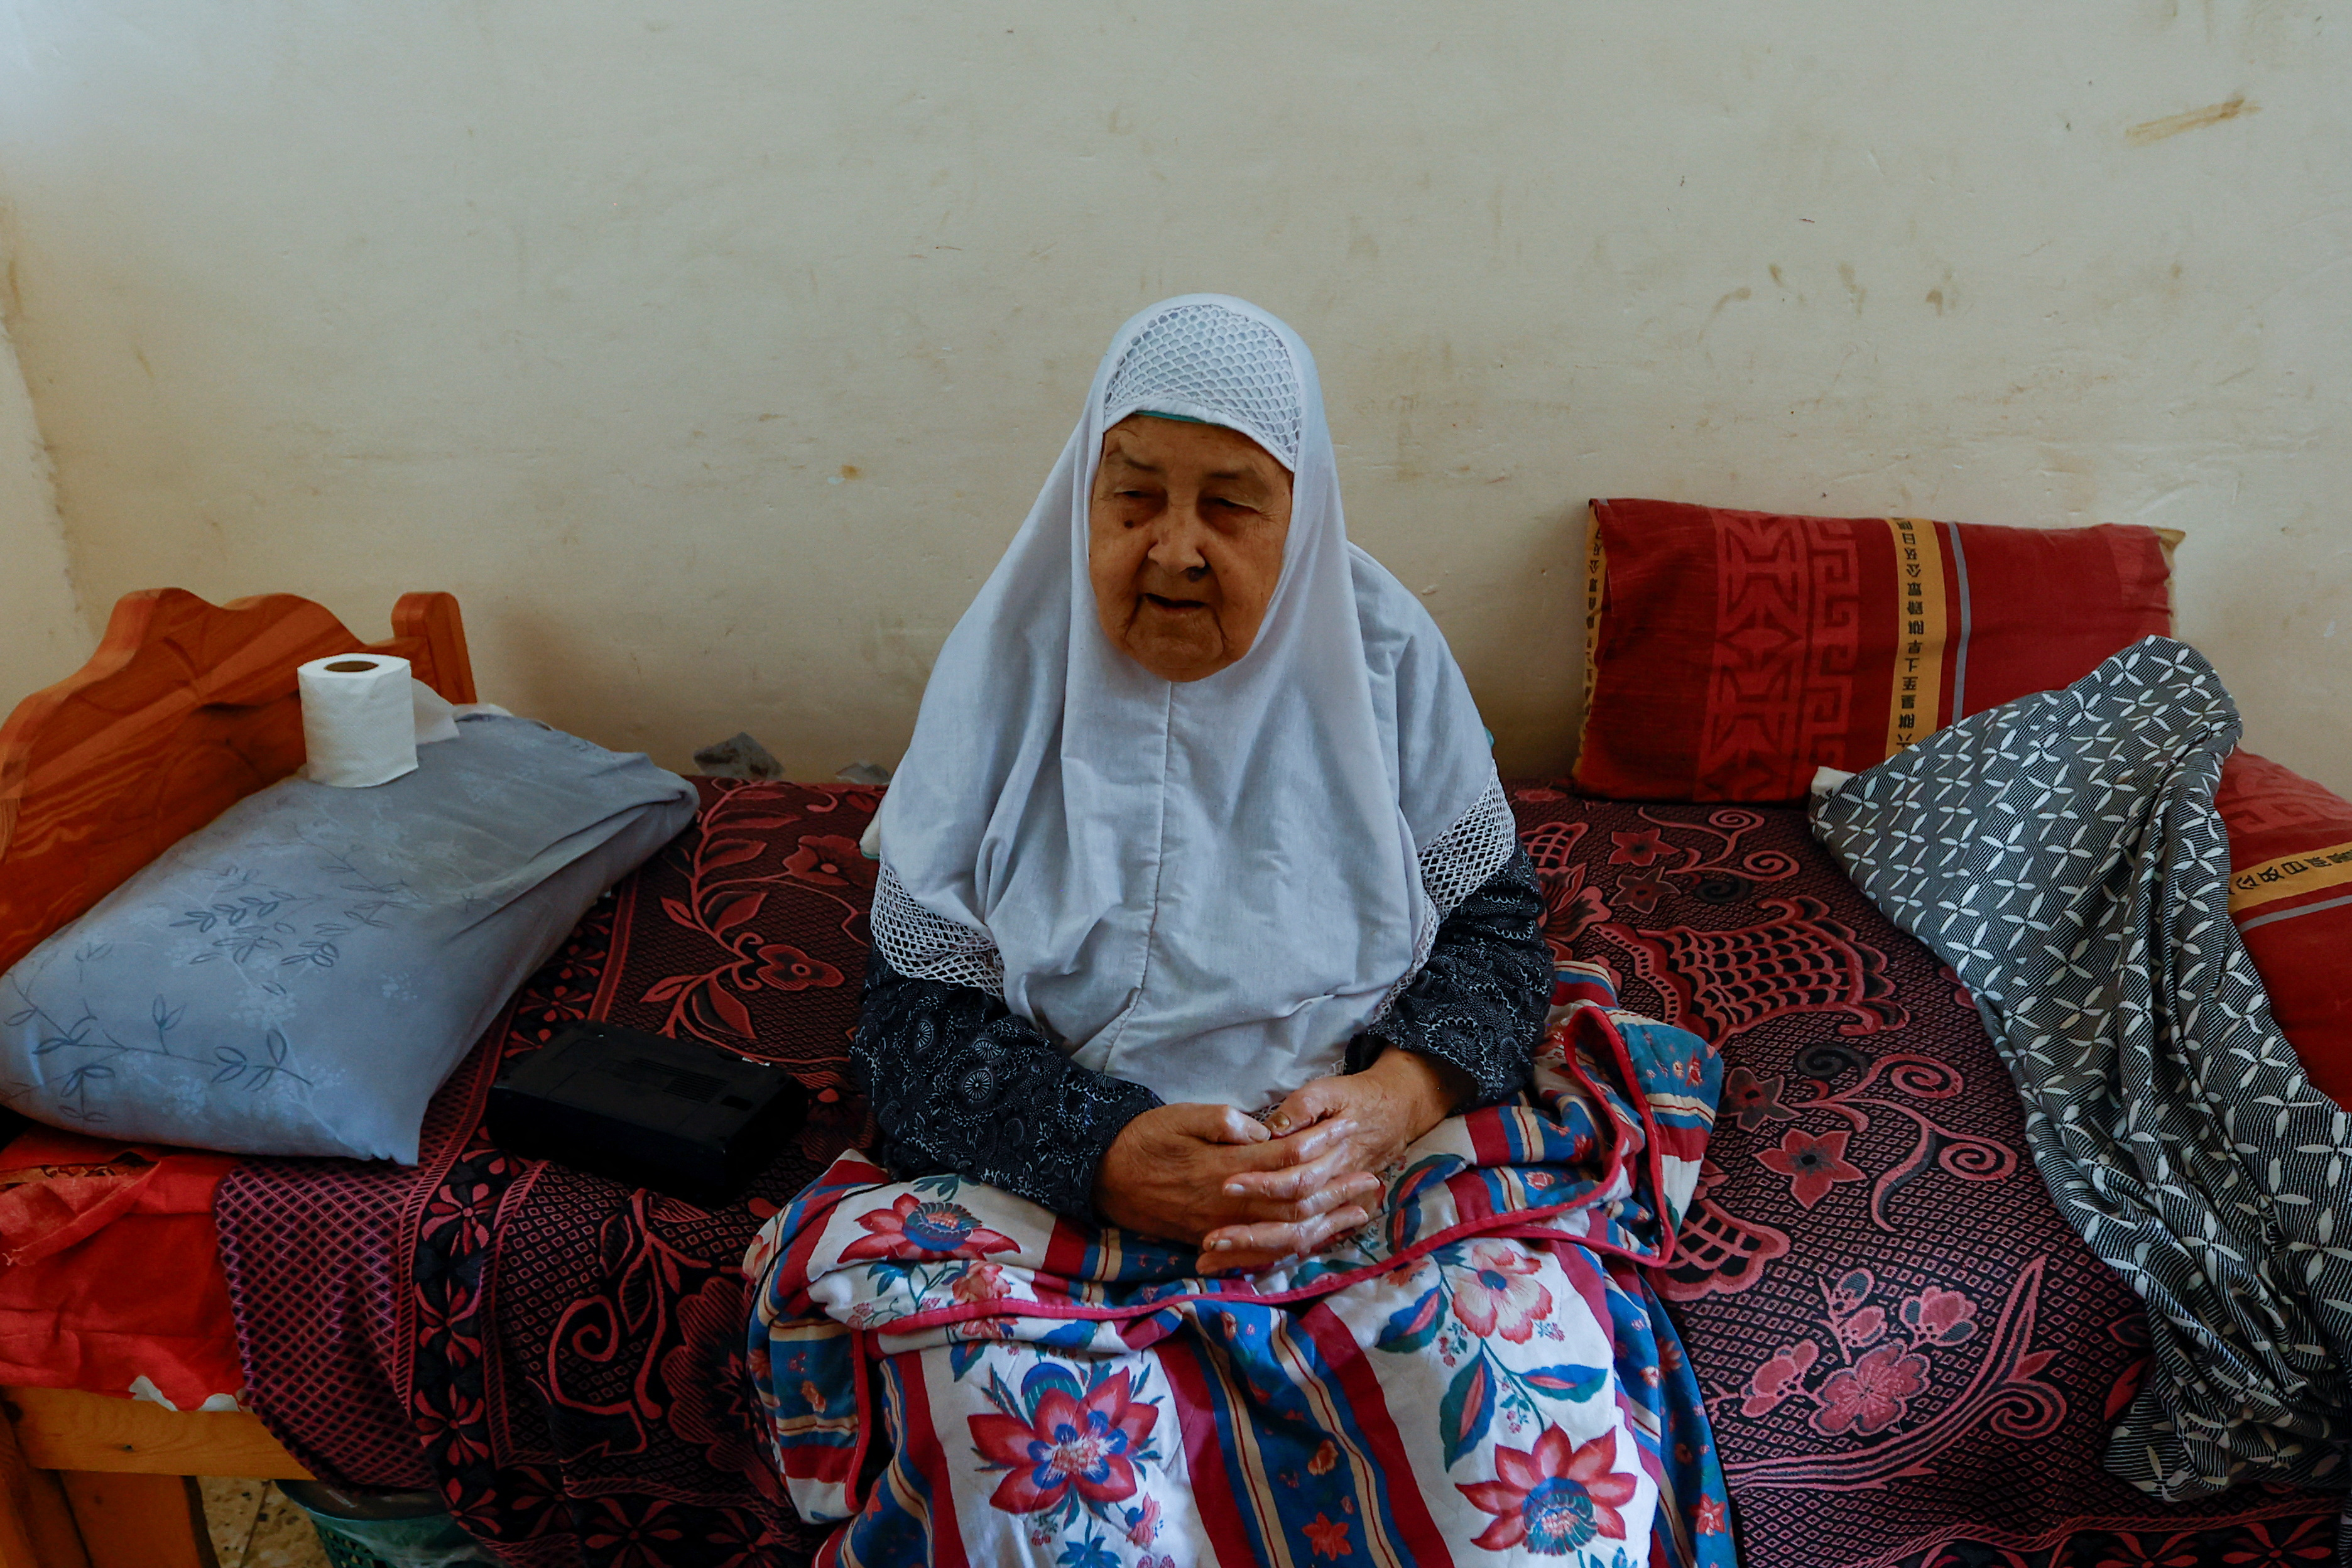 Palestinian woman Fawzeya Shaheen at her home in Khan Younis